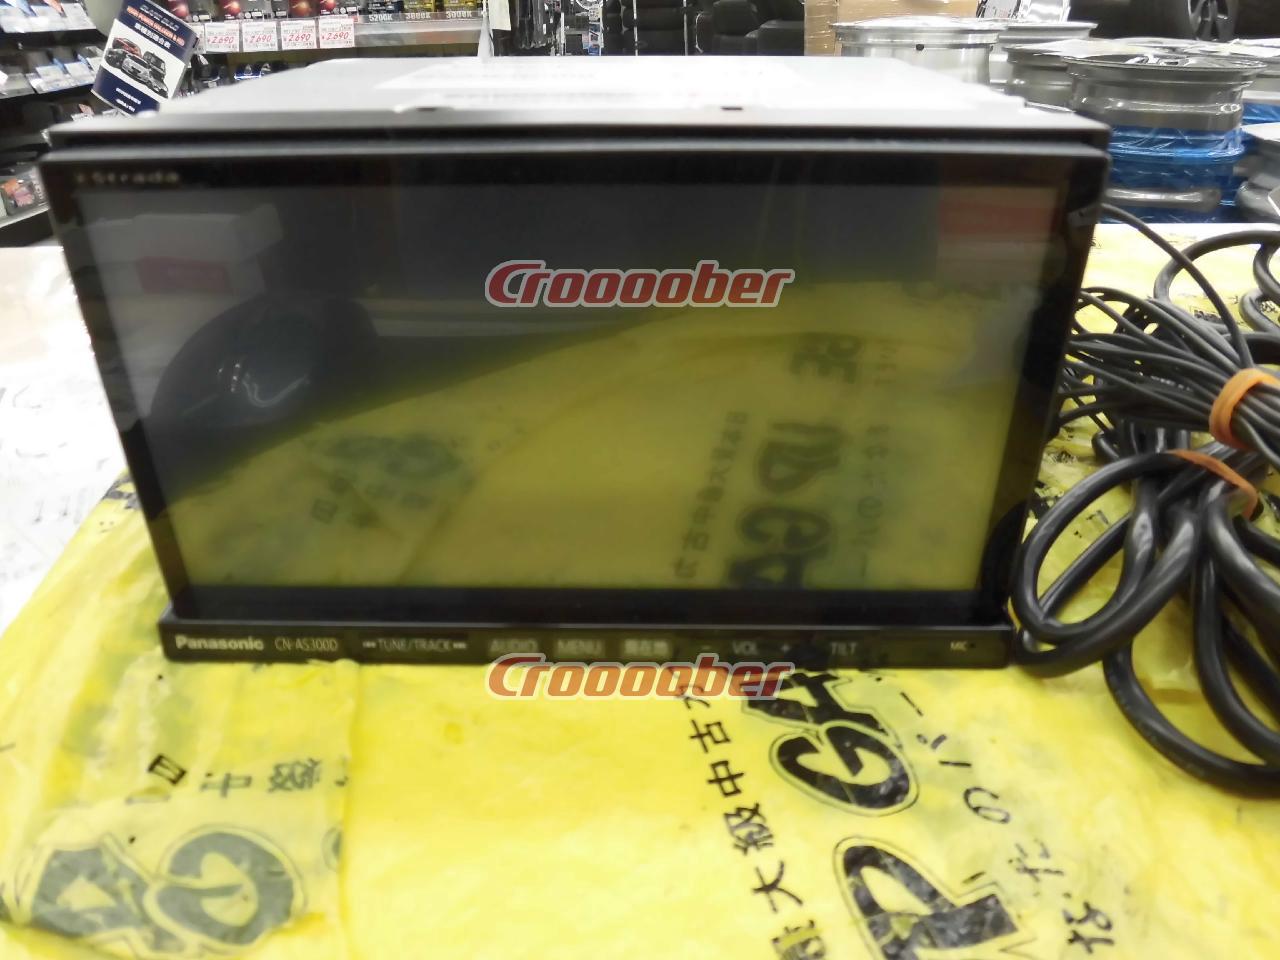 Panasonic CN-AS300D | Memory Navigation(digital) | Croooober